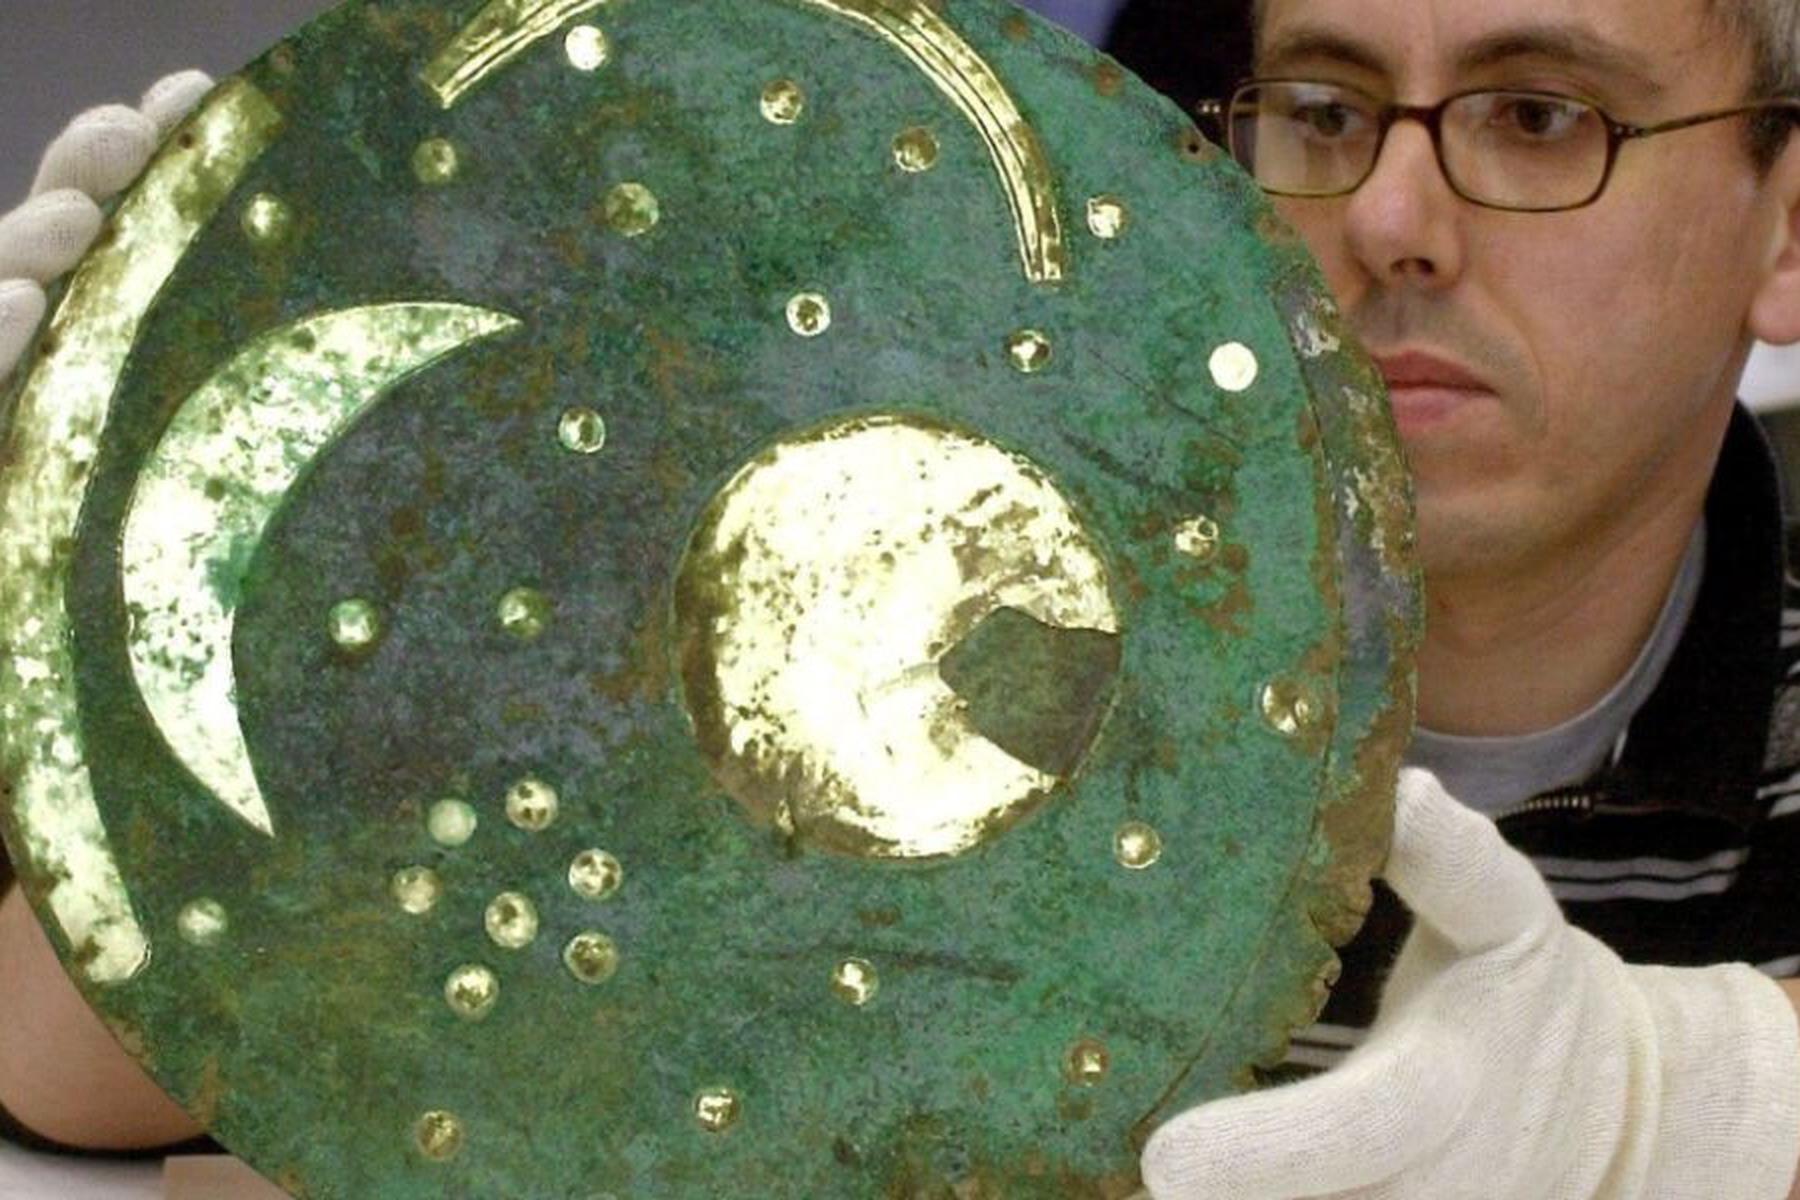 Halle: Himmelsscheibe von Nebra vor 25 Jahren gefunden